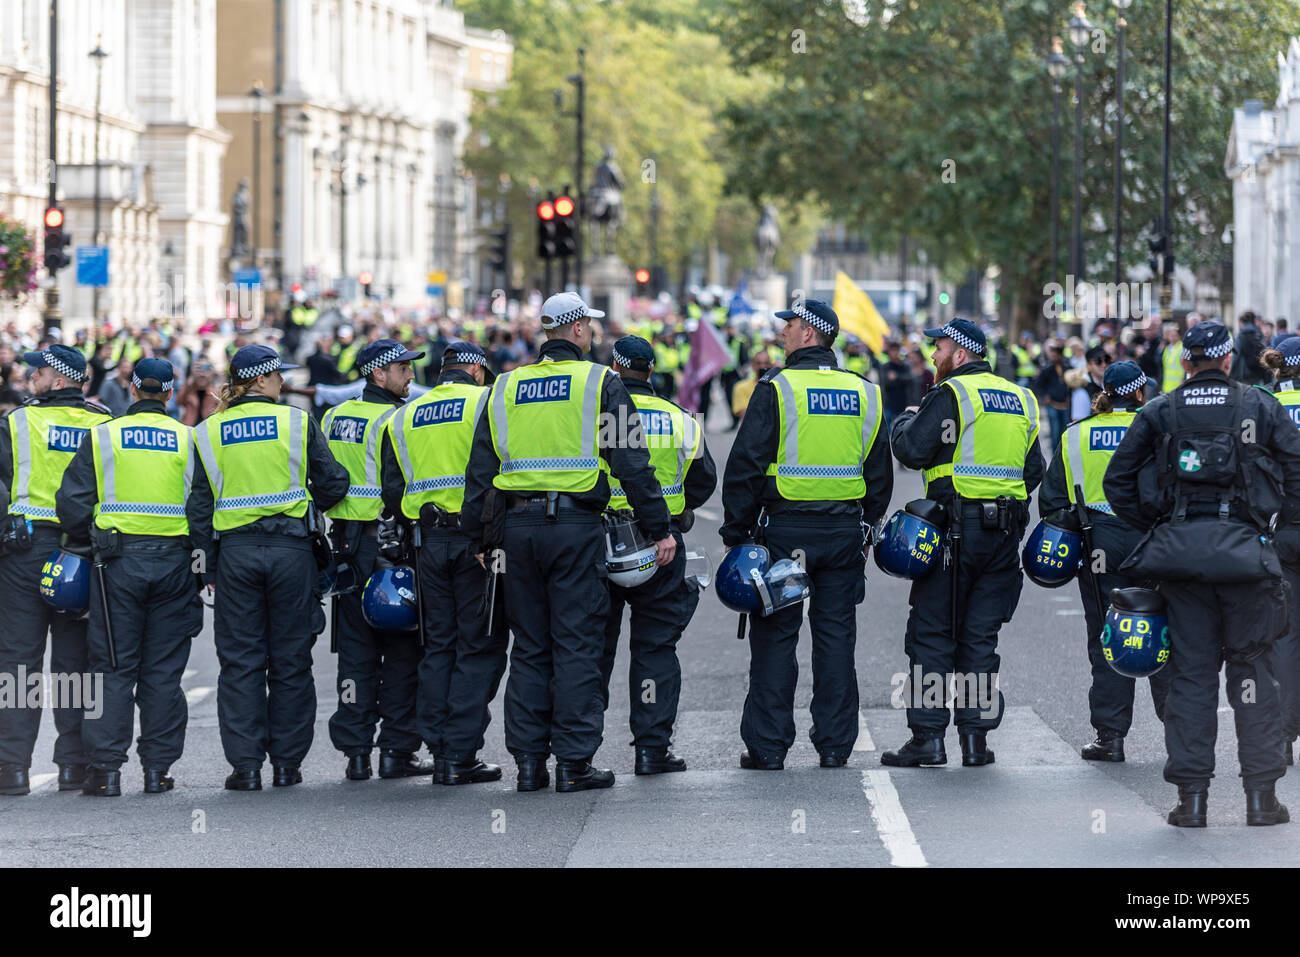 Le proteste in Westminster London REGNO UNITO contro Brexit, IL REGNO UNITO di lasciare l'Unione europea. Pro Brexit manifestanti hanno creato tensione. Cordone di polizia in Whitehall Foto Stock